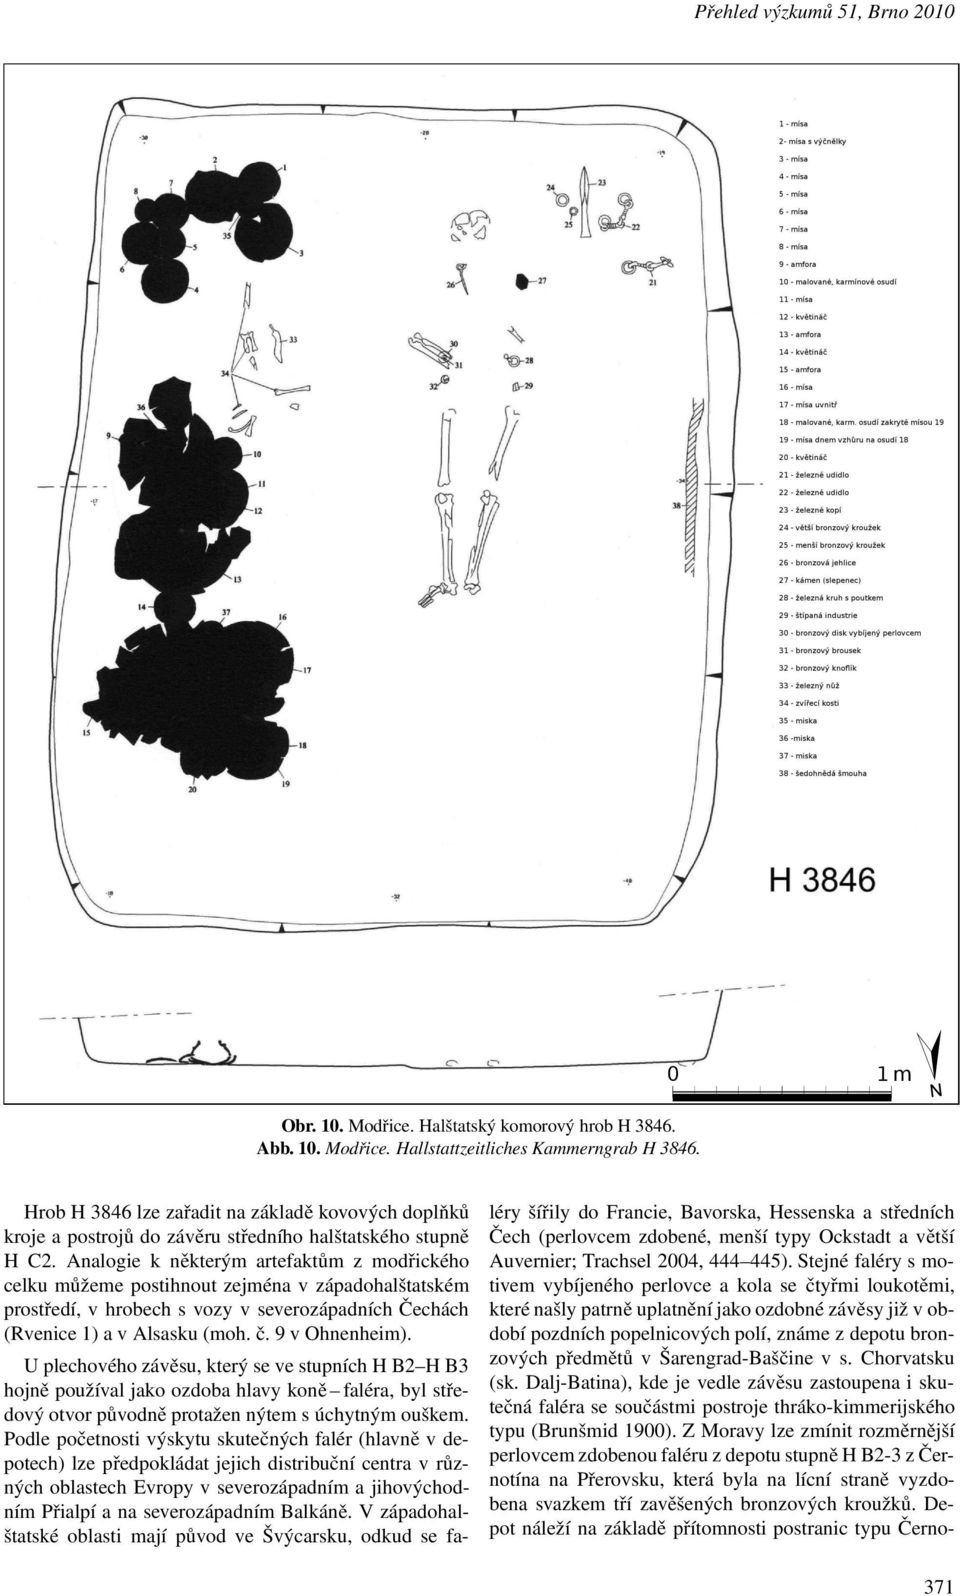 Analogie k některým artefaktům z modřického celku můžeme postihnout zejména v západohalštatském prostředí, v hrobech s vozy v severozápadních Čechách (Rvenice1)avAlsasku(moh.č.9vOhnenheim).